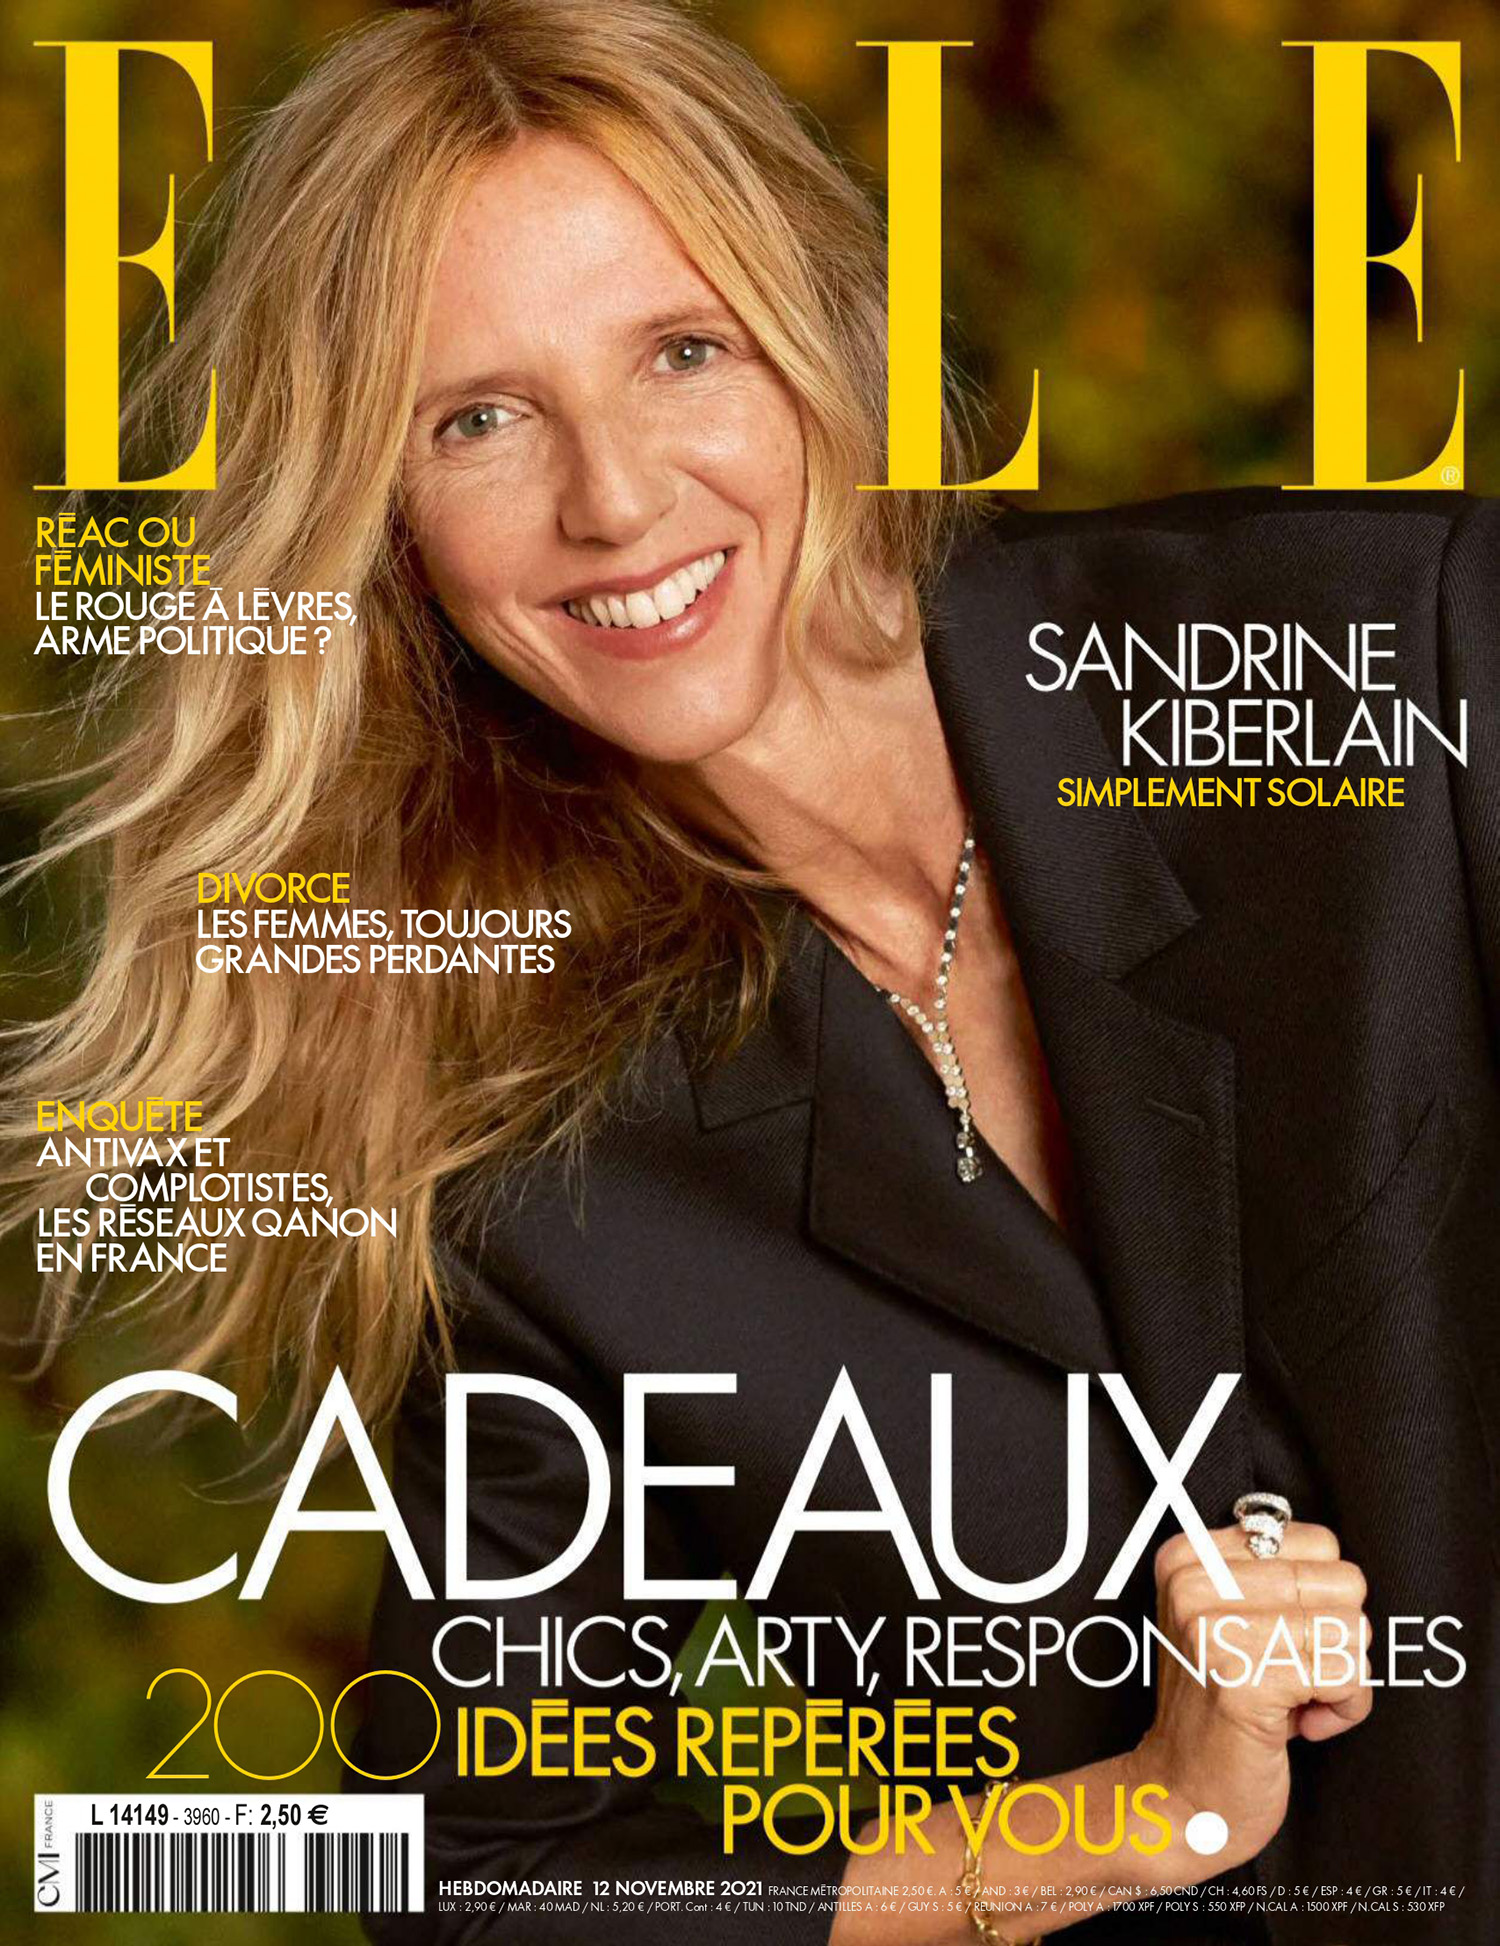 Sandrine Kiberlain covers Elle France November 12th, 2021 by Gilles Bensimon